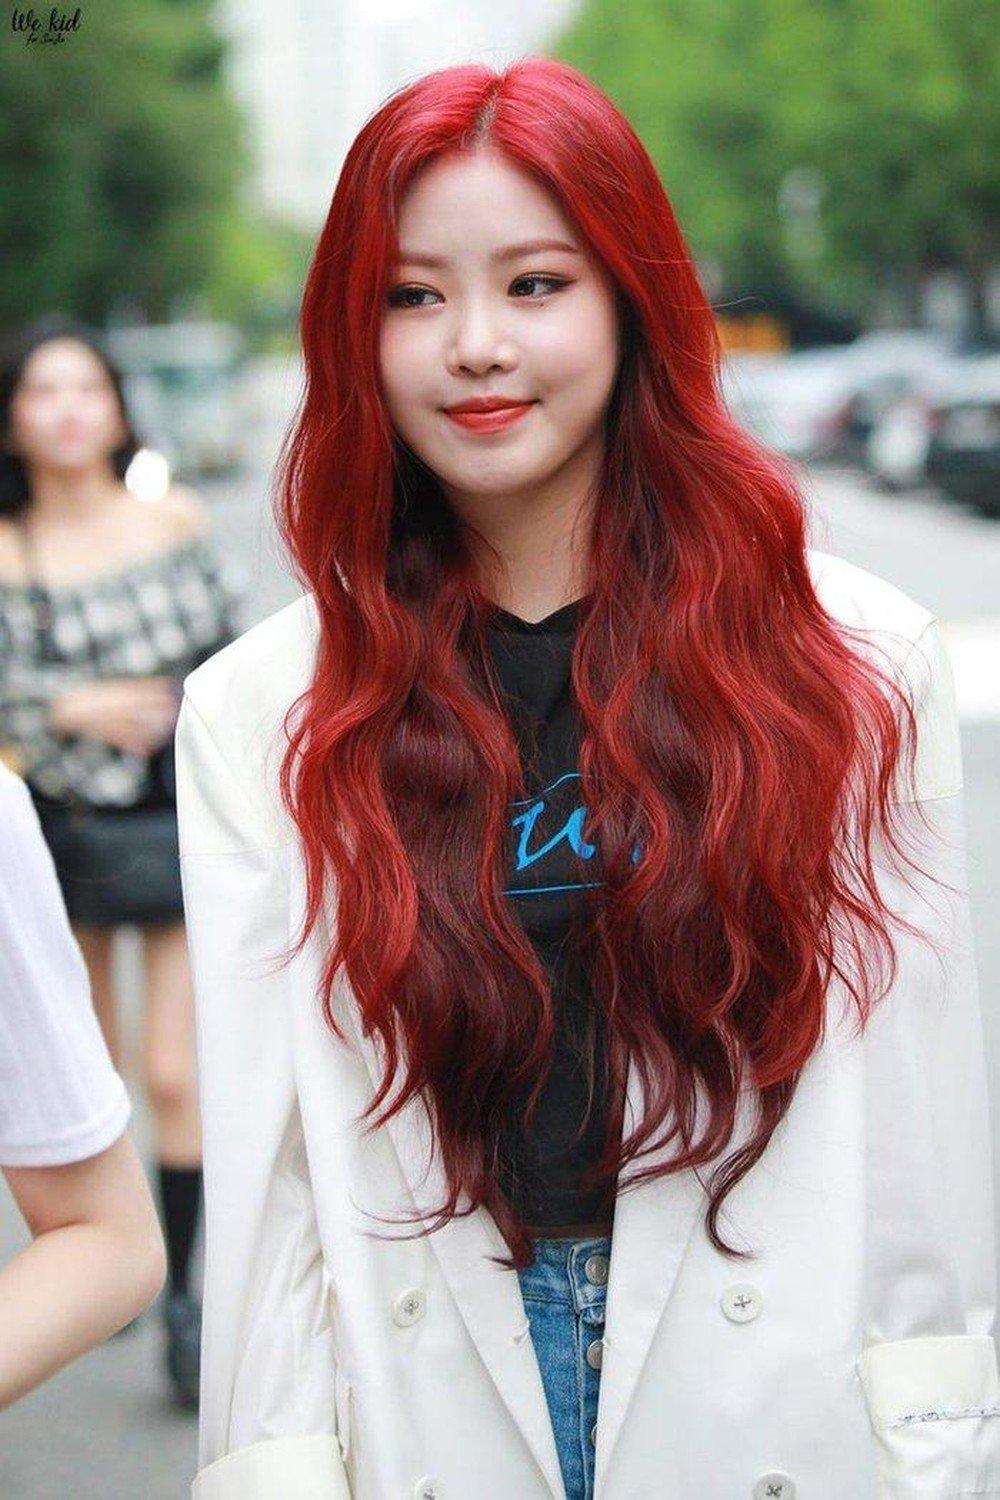 Soojin cũng là một trong những idol ấn tượng với màu tóc đỏ rực. (Ảnh: Internet)